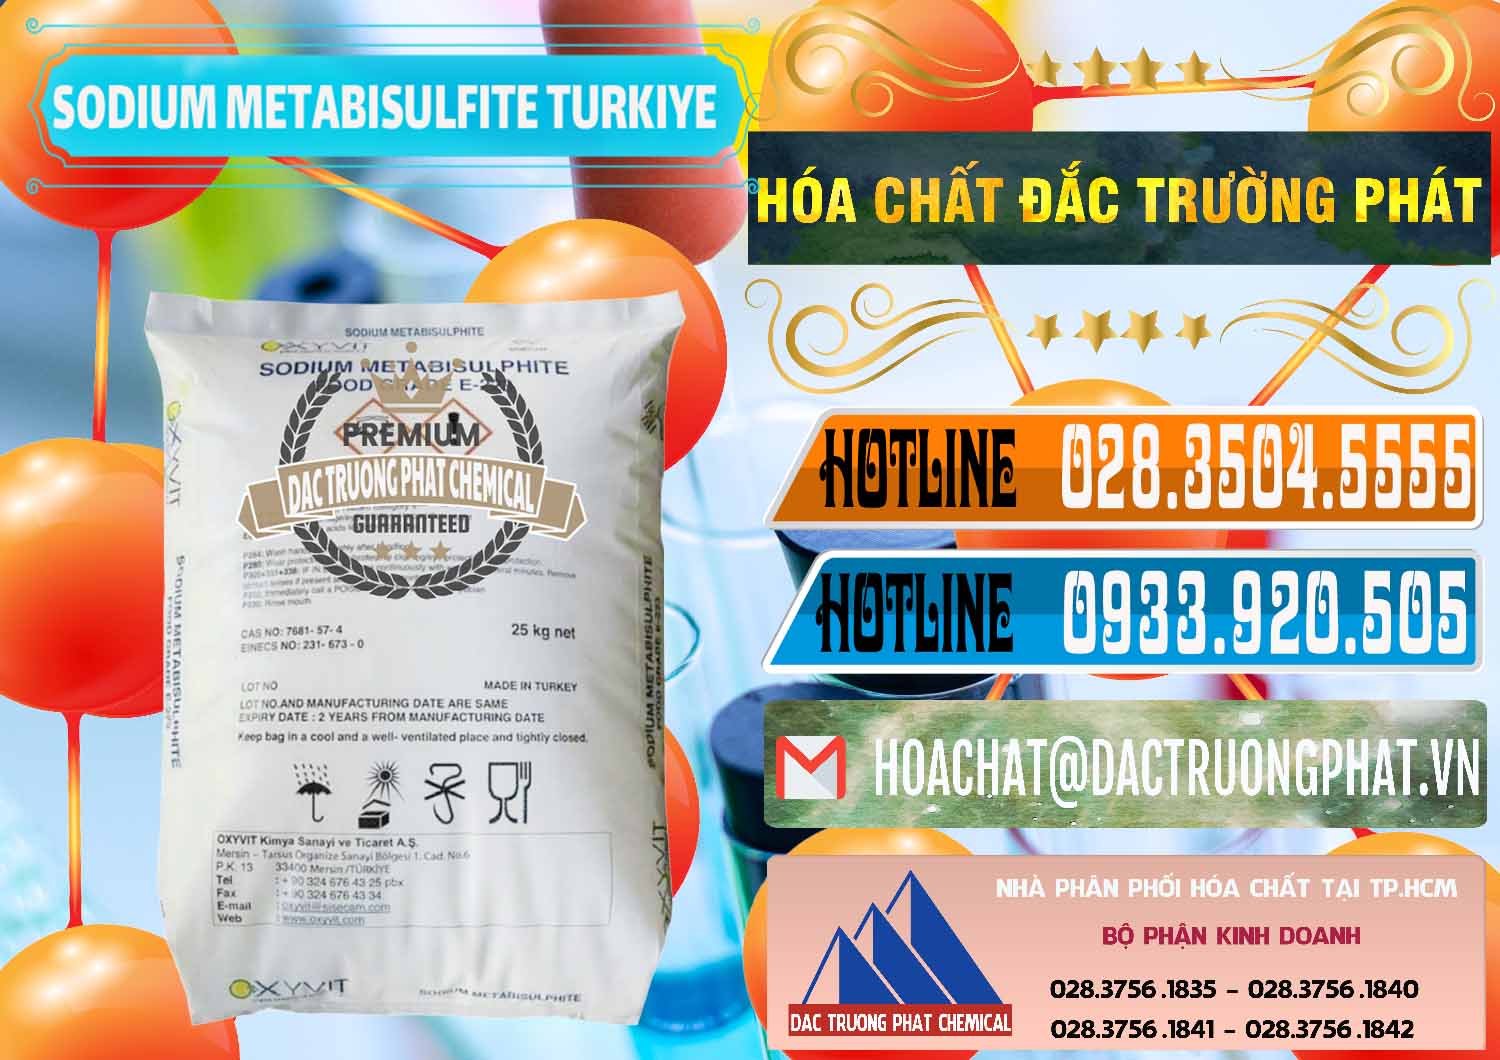 Nơi phân phối và bán Sodium Metabisulfite - NA2S2O5 Food Grade E-223 Thổ Nhĩ Kỳ Turkey - 0413 - Cty chuyên phân phối _ cung ứng hóa chất tại TP.HCM - stmp.net